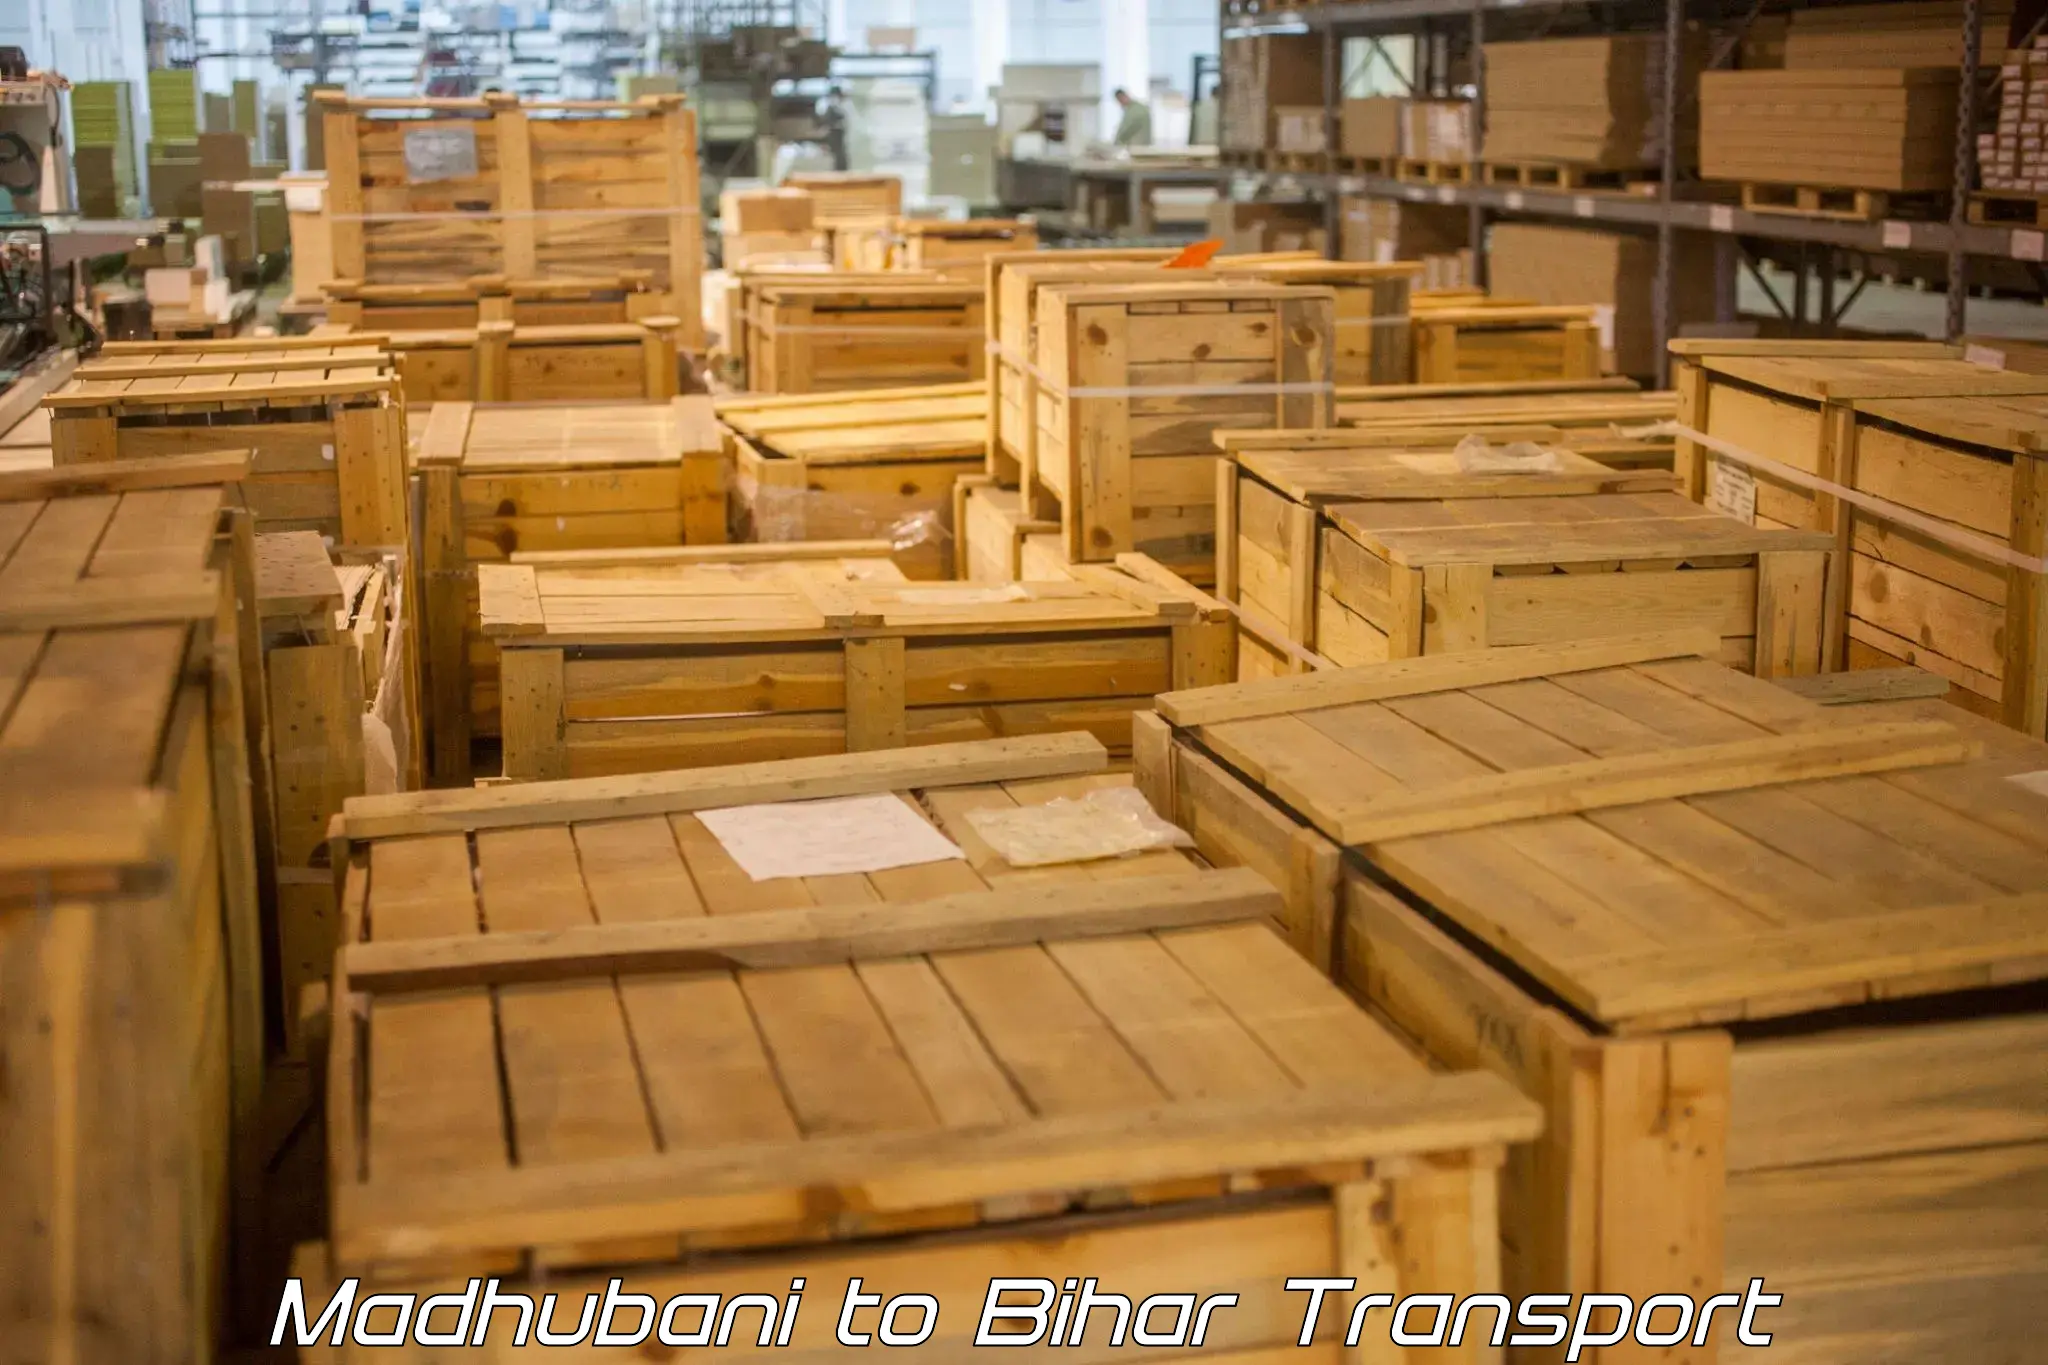 Online transport booking Madhubani to Kharagpur Munger